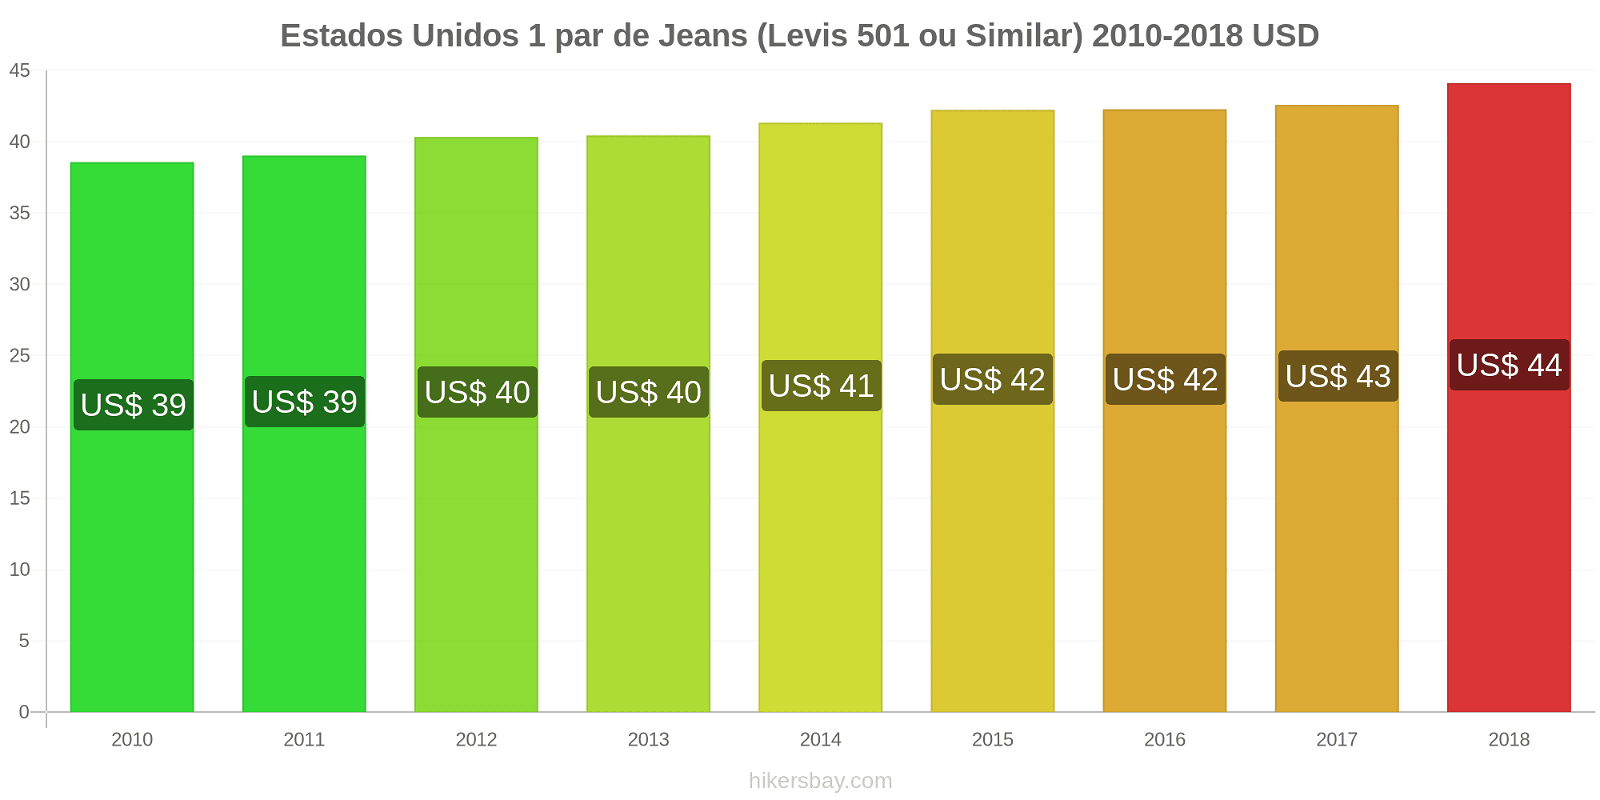 Estados Unidos mudanças de preços 1 par de jeans (Levis 501 ou similares) hikersbay.com